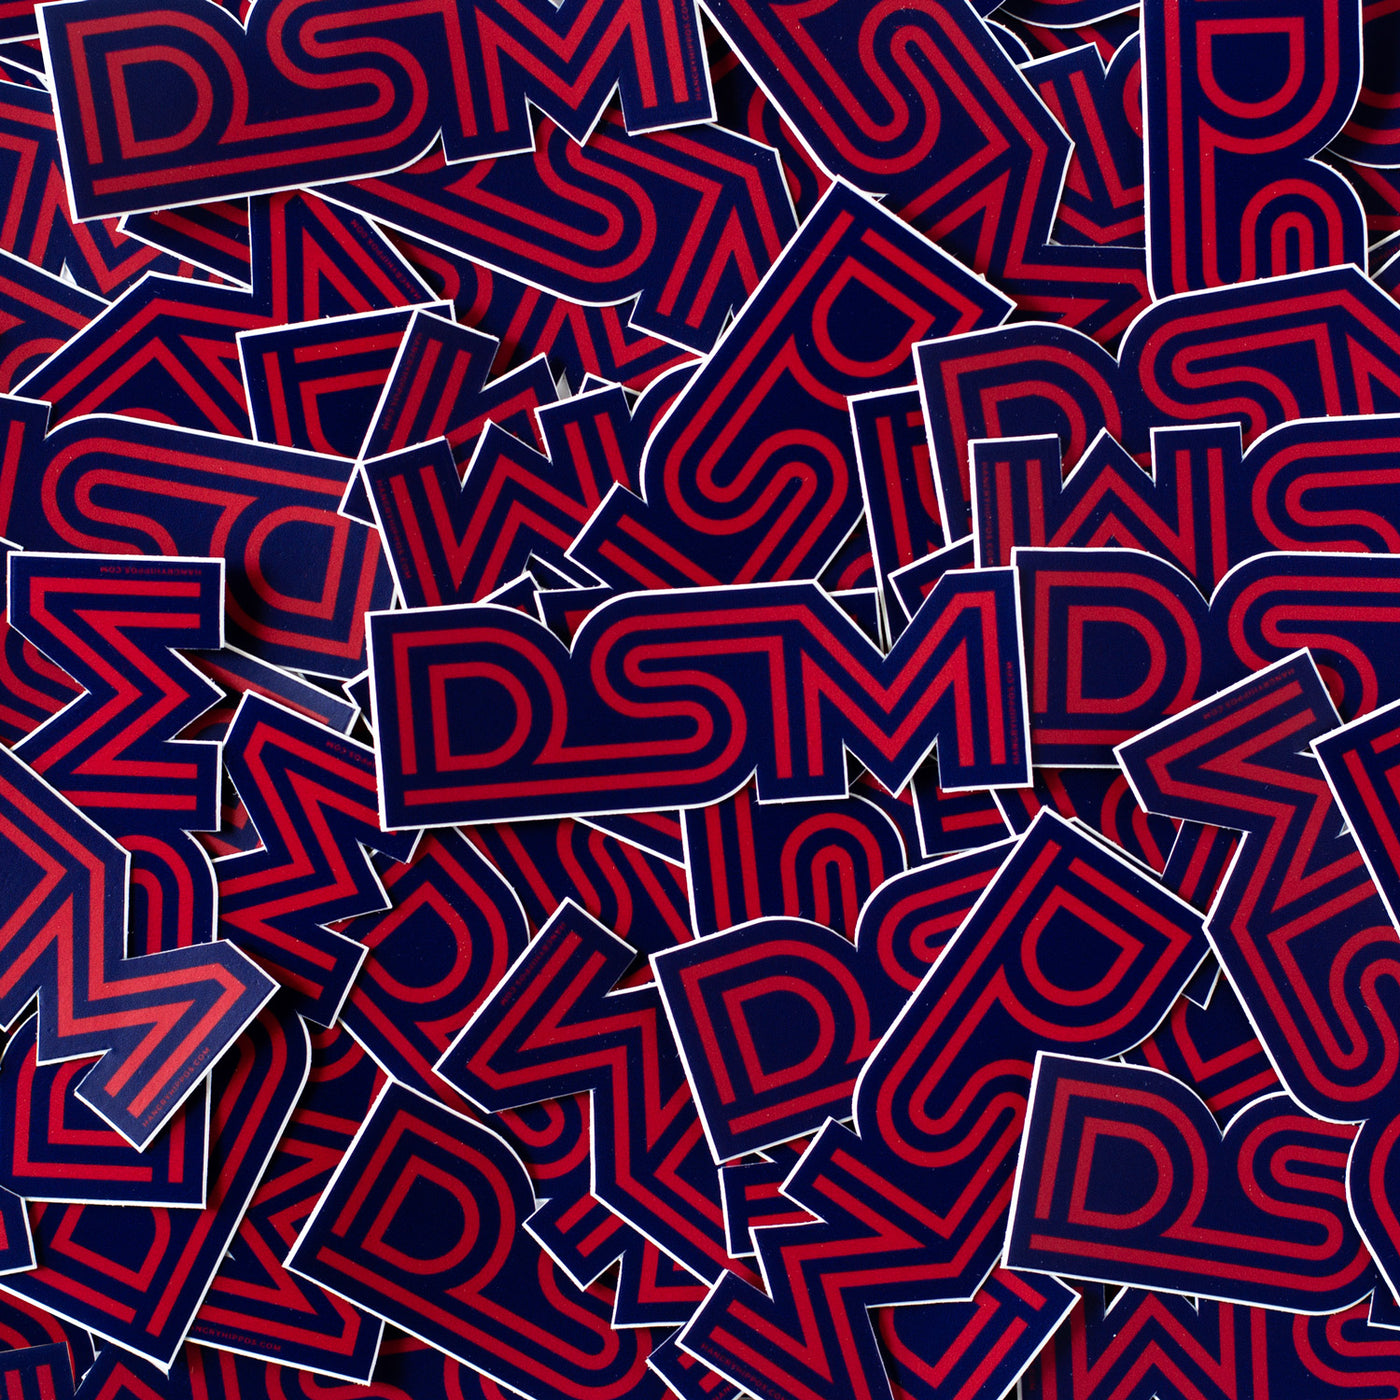 DSM Sticker